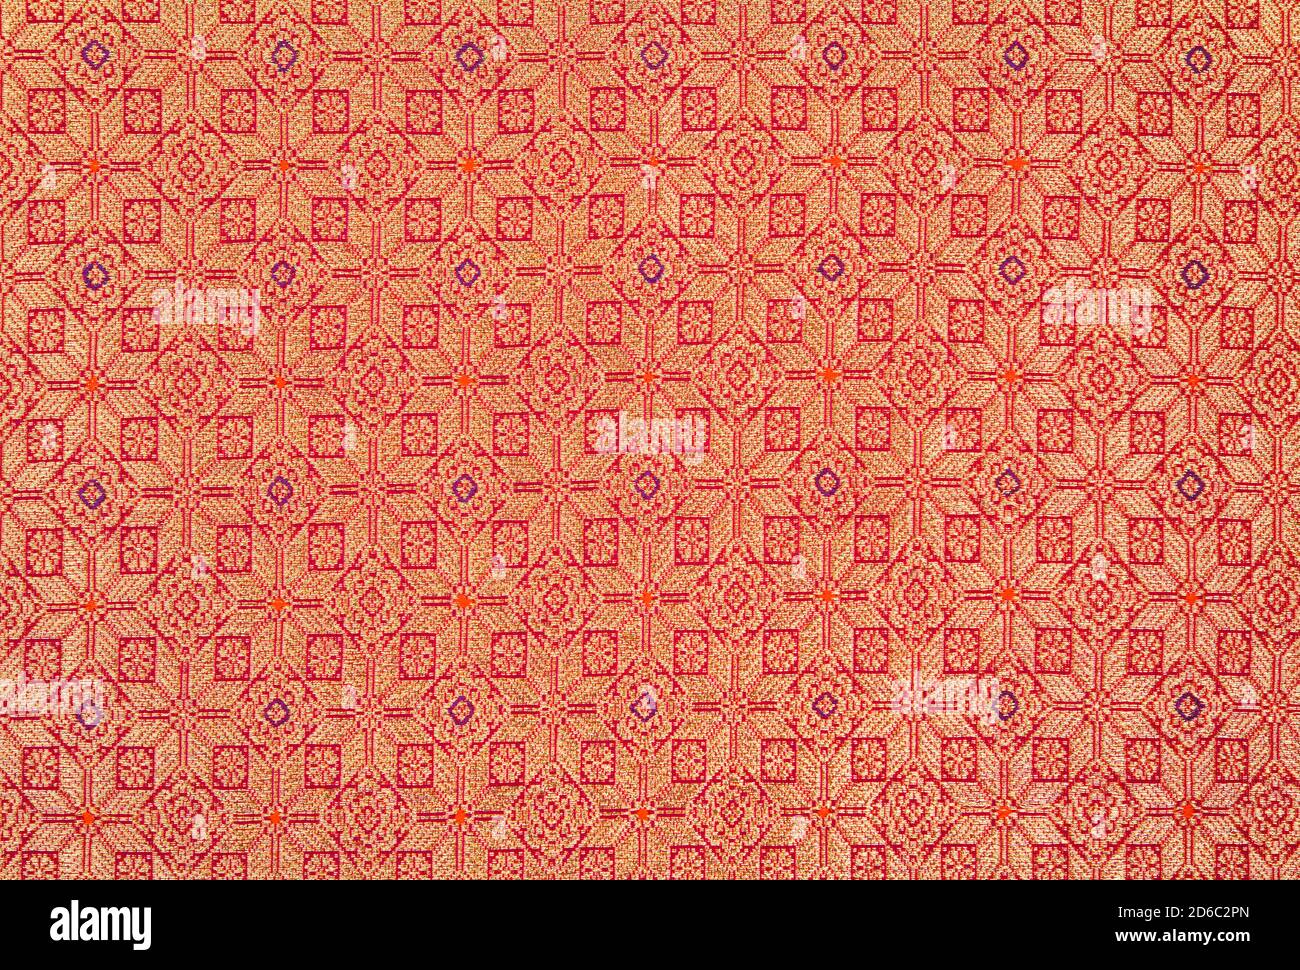 Lepus bintang , textile pattern from palembang, indonesia Stock Photo